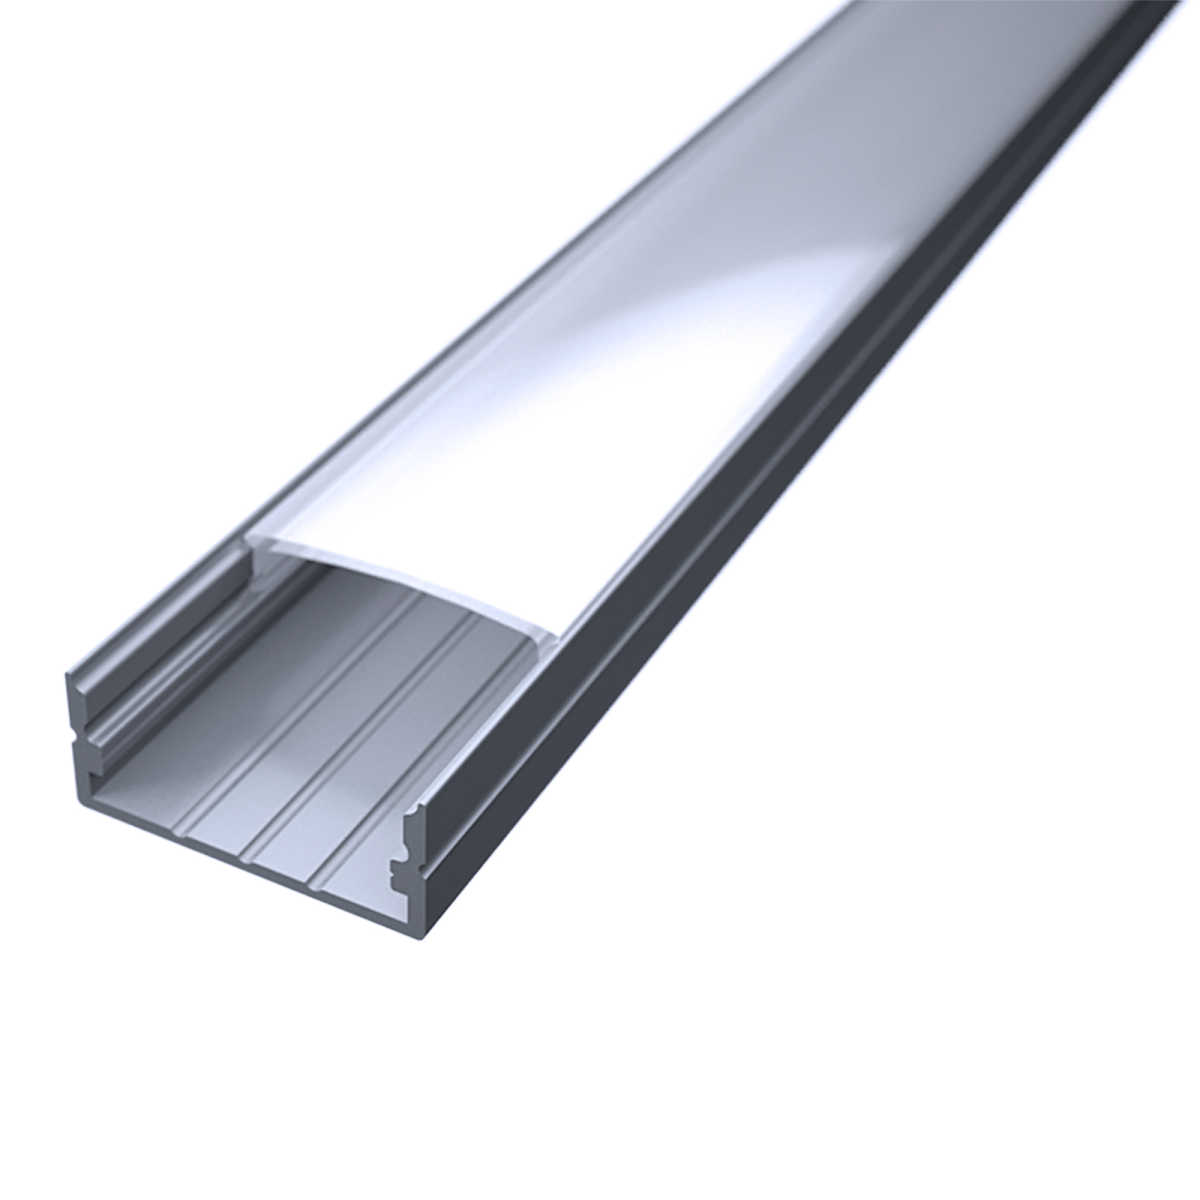 LED Flachprofil "Slim-Line max" | Abdeckung diffus | Zuschnitt auf 68cm |